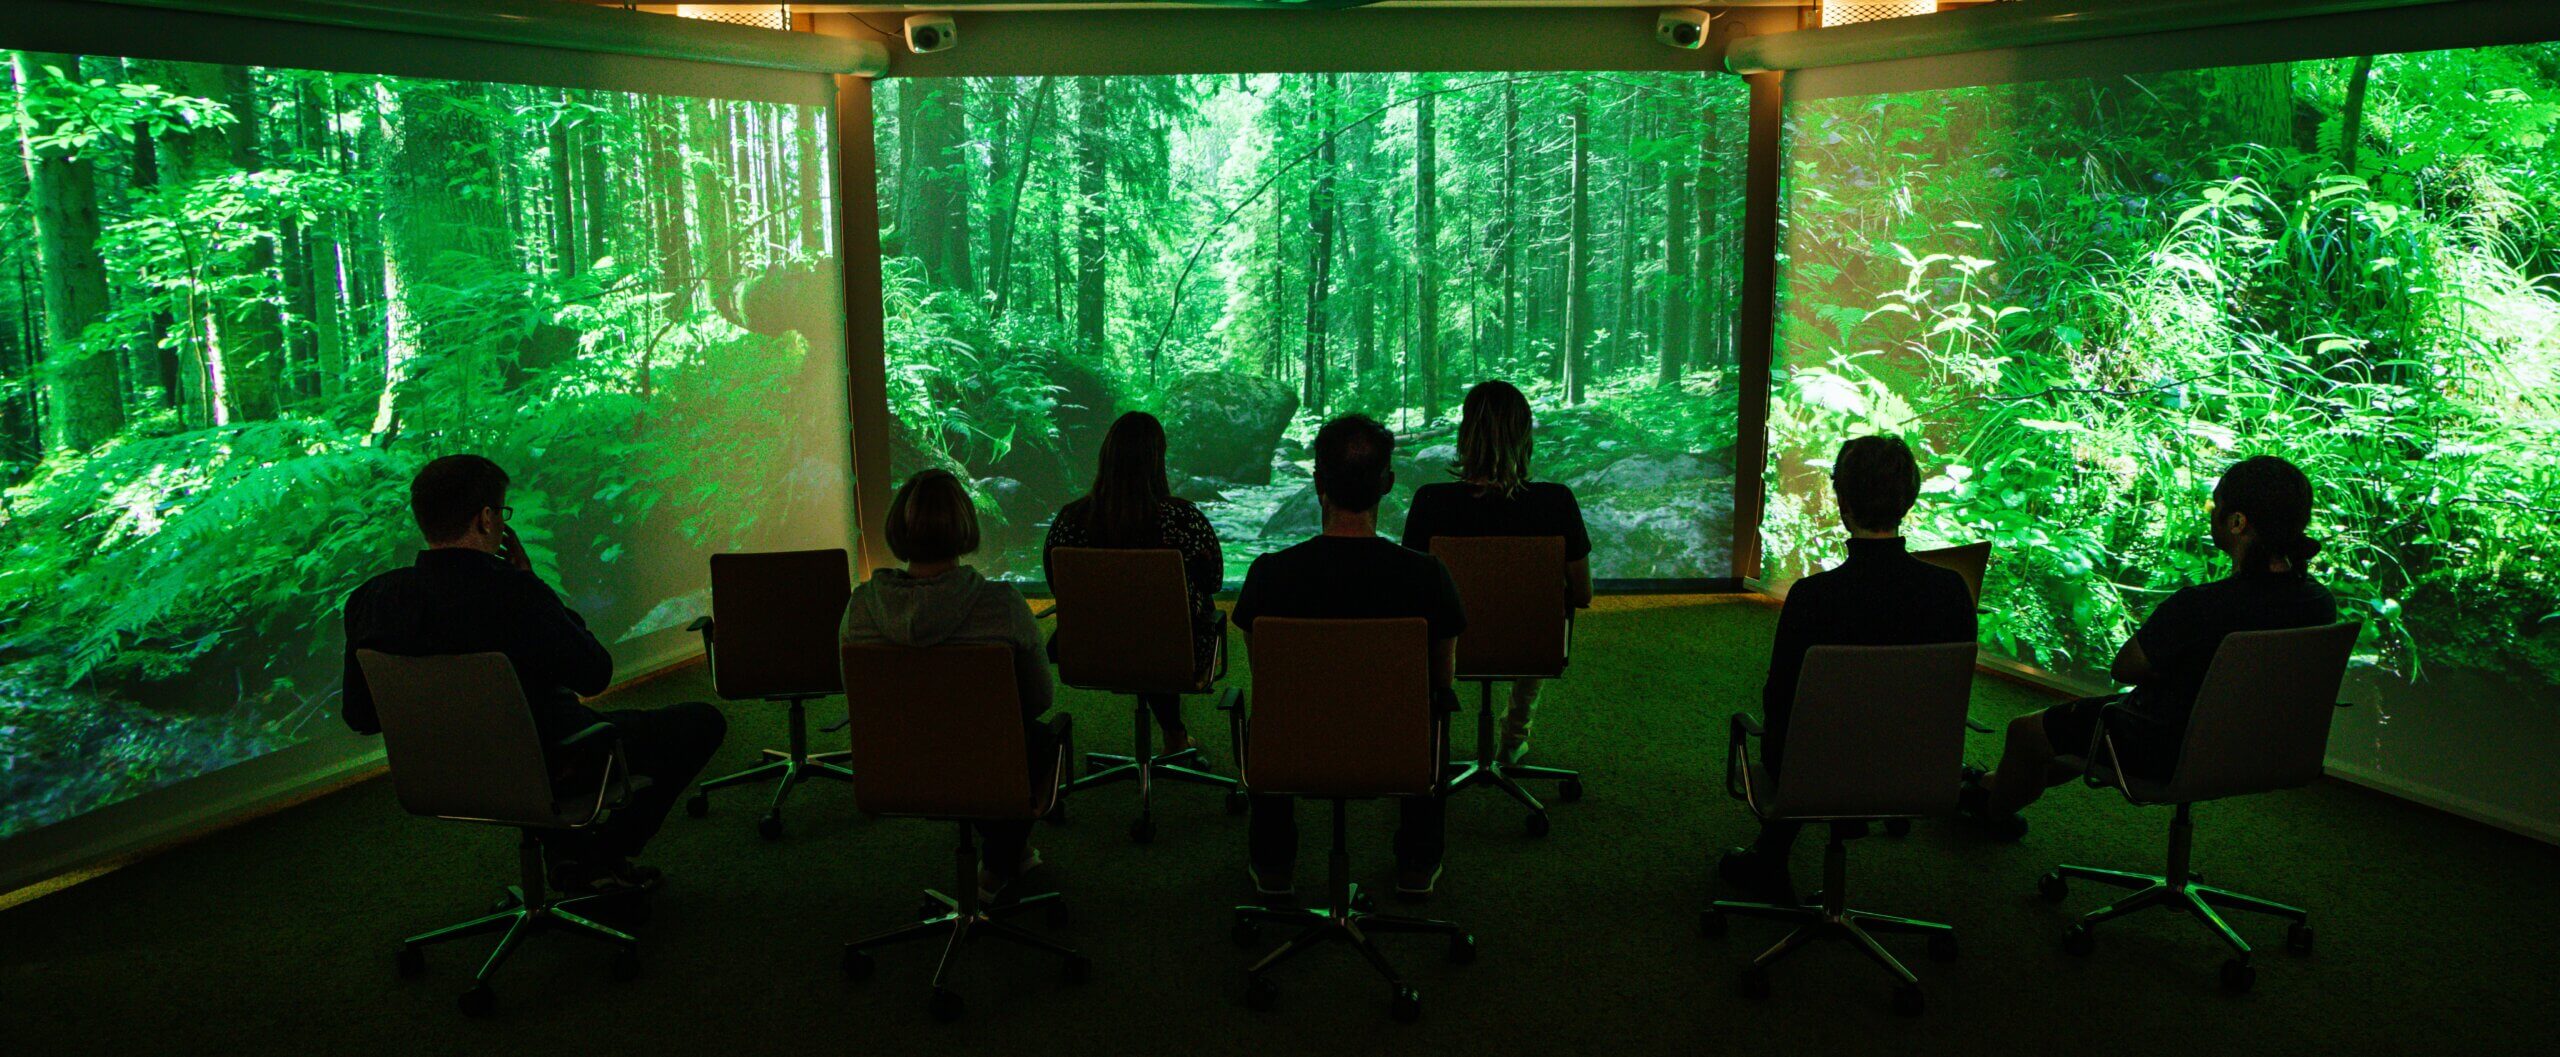 Ihmisiä istumassa virtuaalisen luontomaiseman ääressä